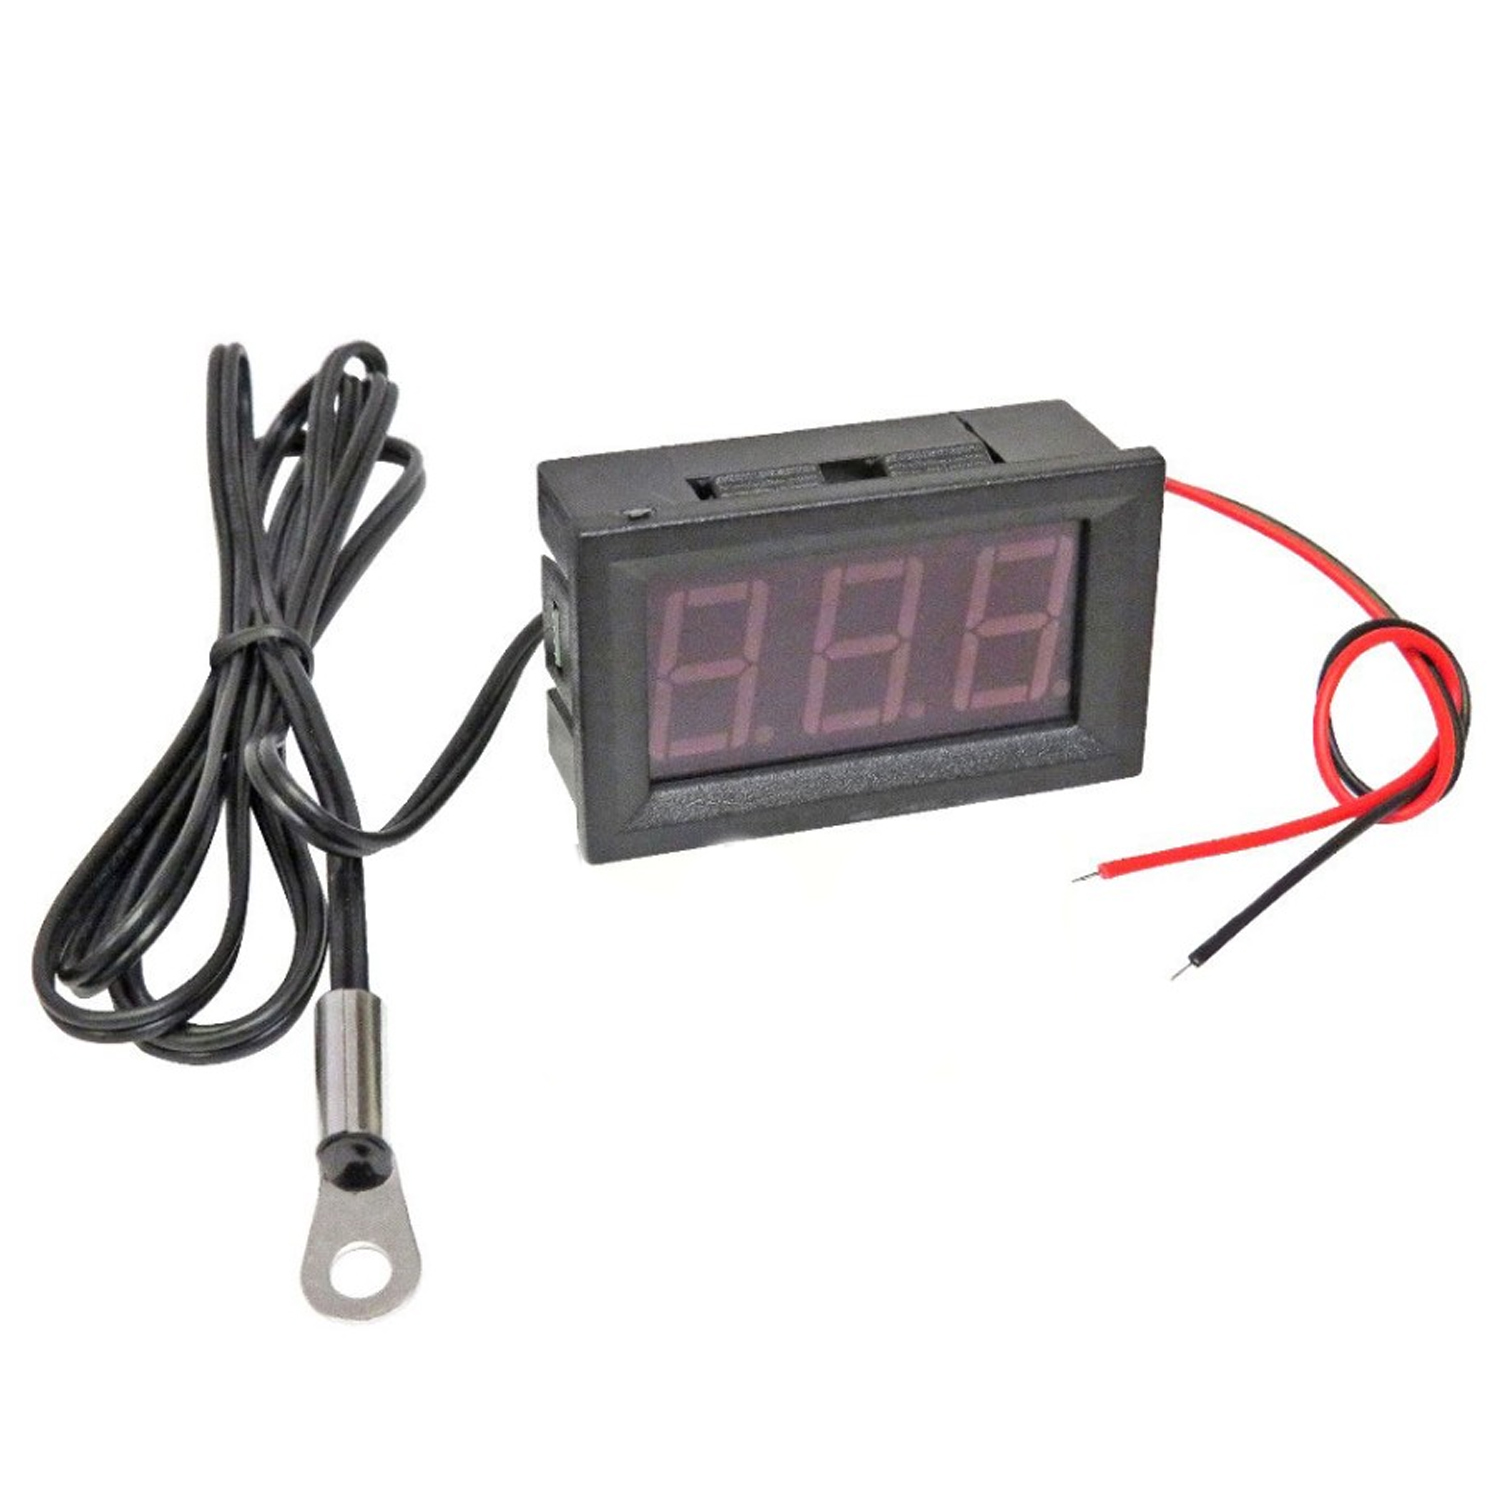 Цифровой термометр с выносным датчиком-шайбой температуры -50 до +110 °C. DC 4-12В, Красный, фото